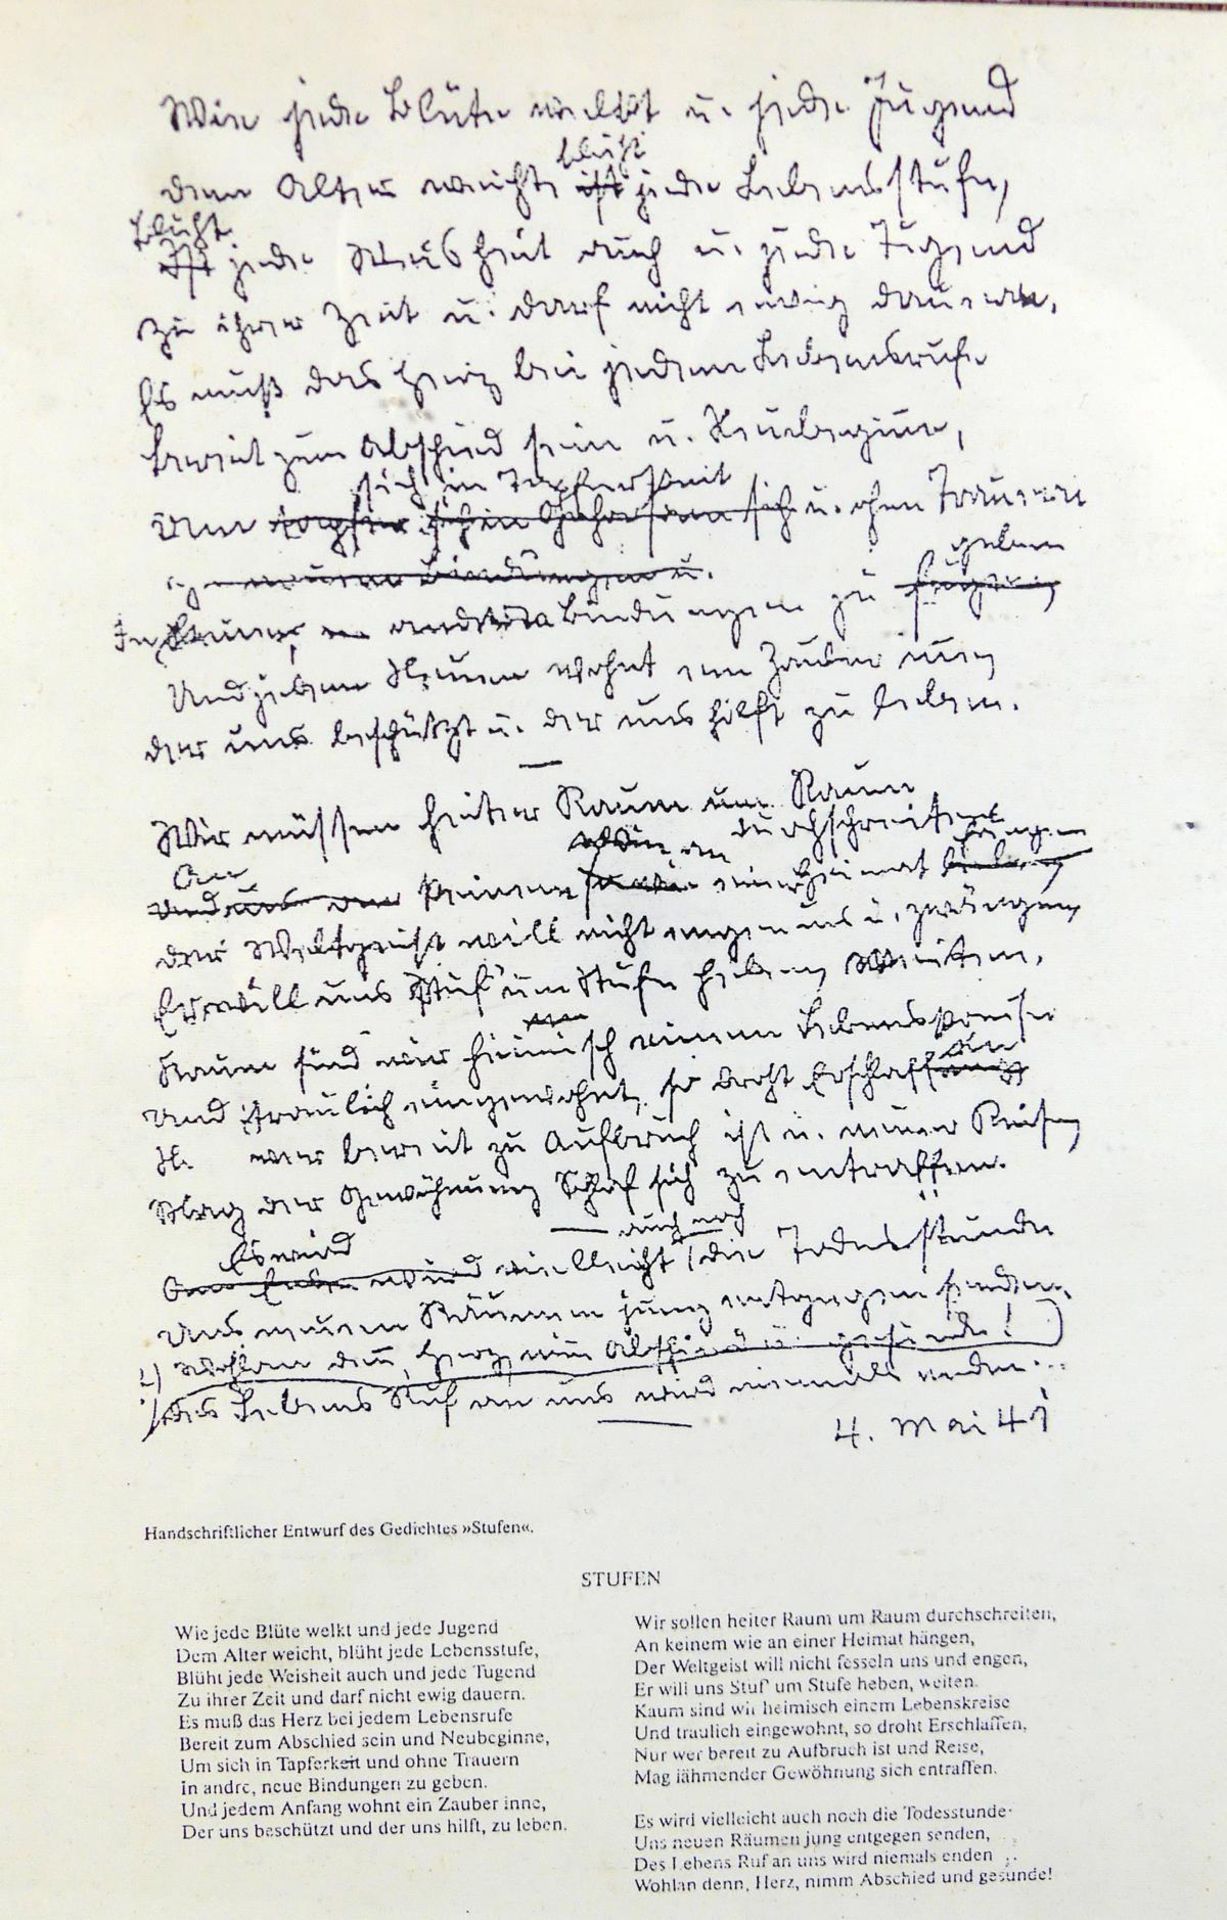 HERMANN HESSE, "Handschriftlicher Entwurf des Gedichtes Stufen", 04.Mai'41, - Image 2 of 2